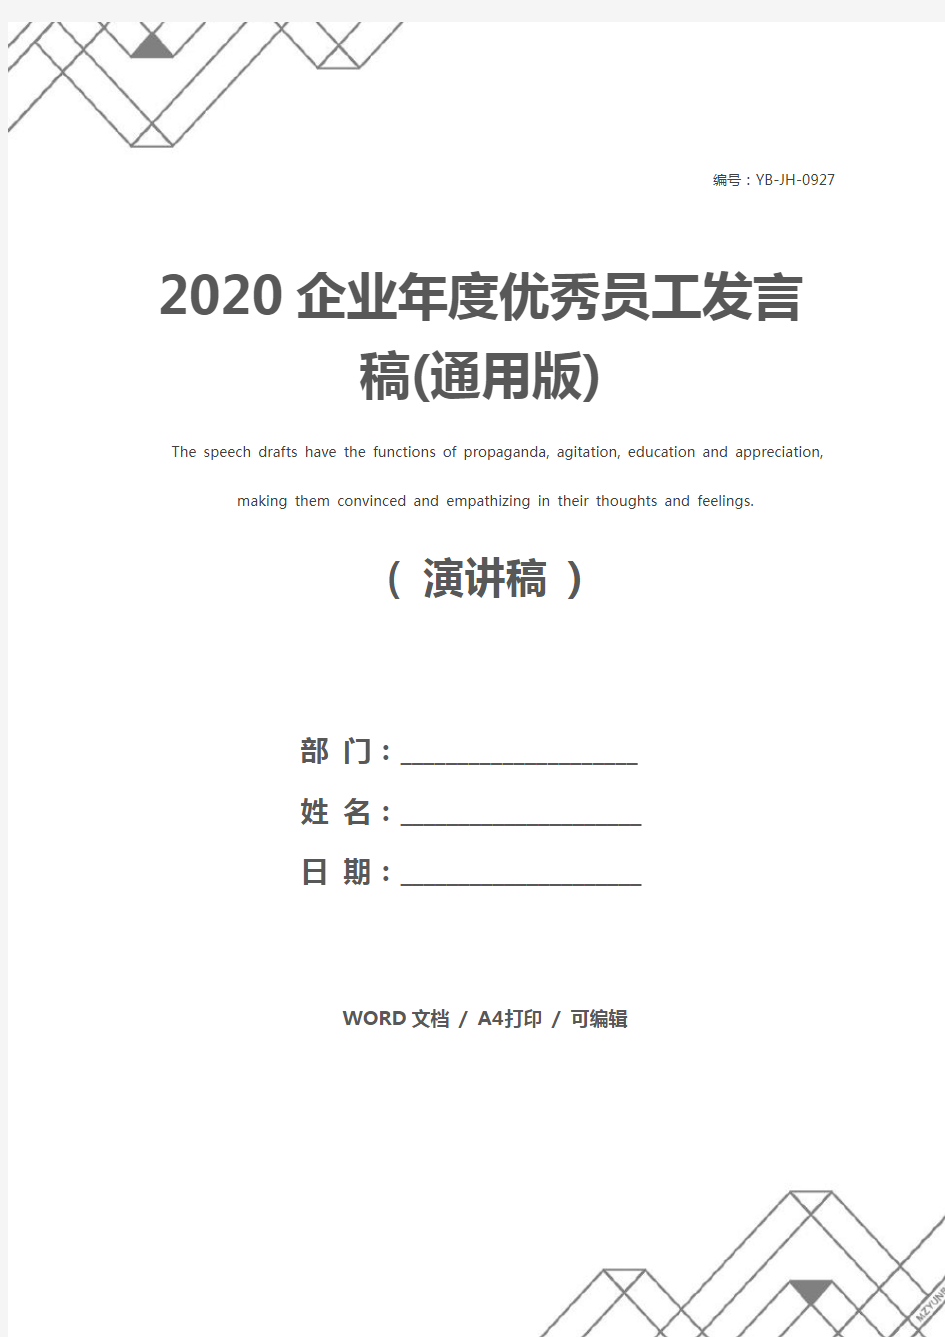 2020企业年度优秀员工发言稿(通用版)